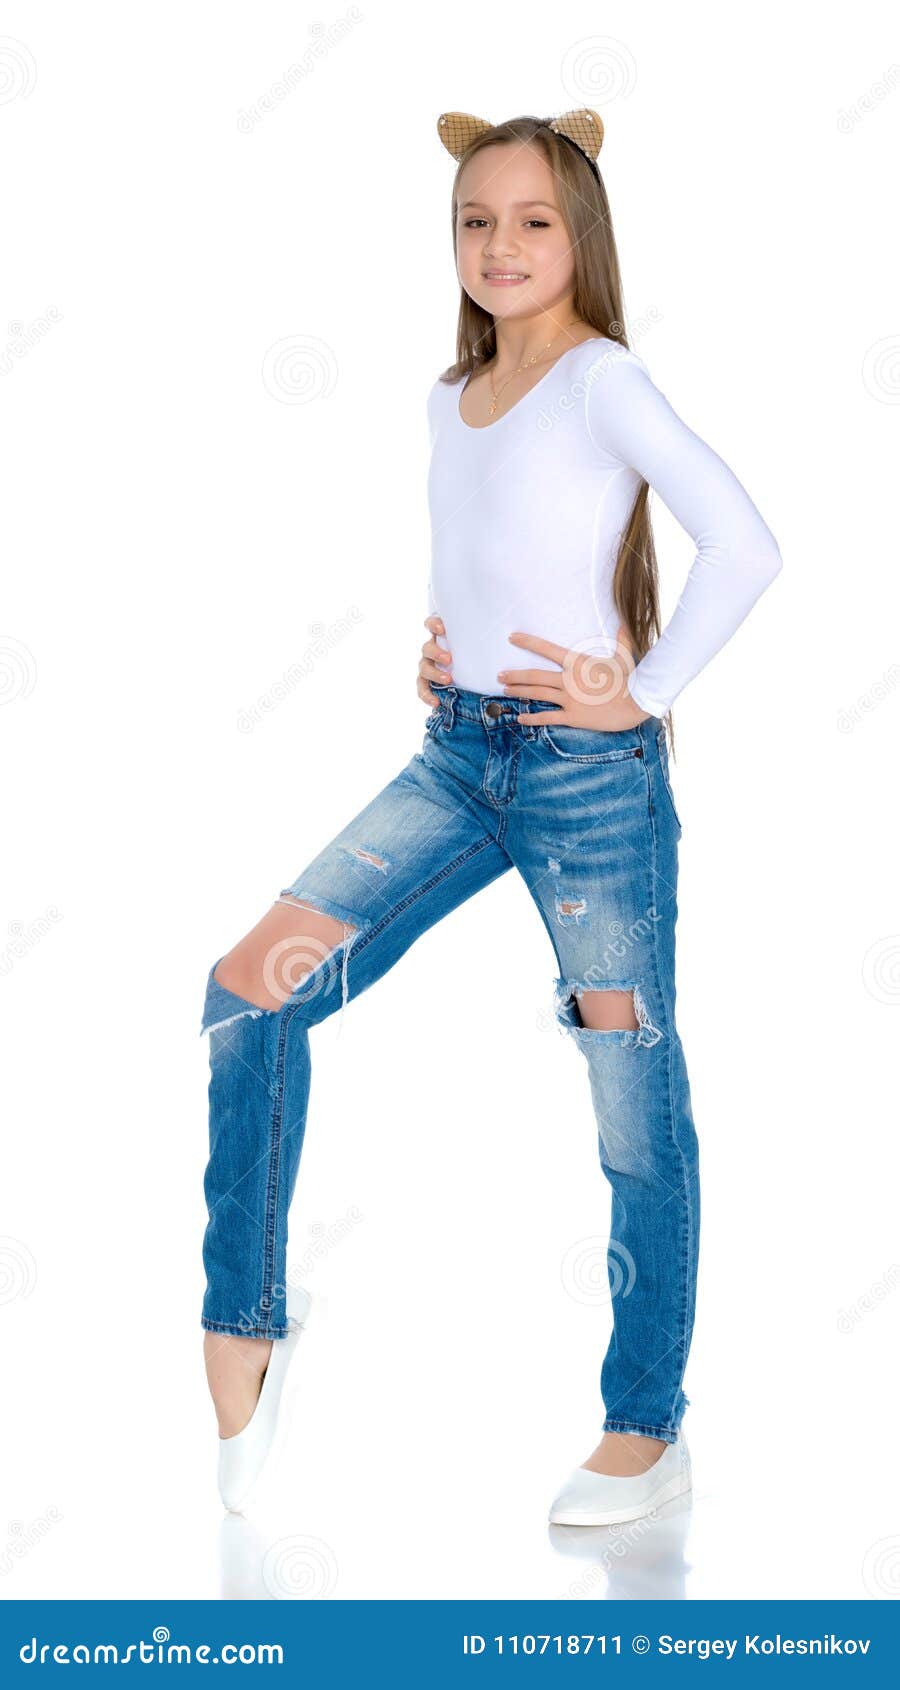 teen girsl in jeans